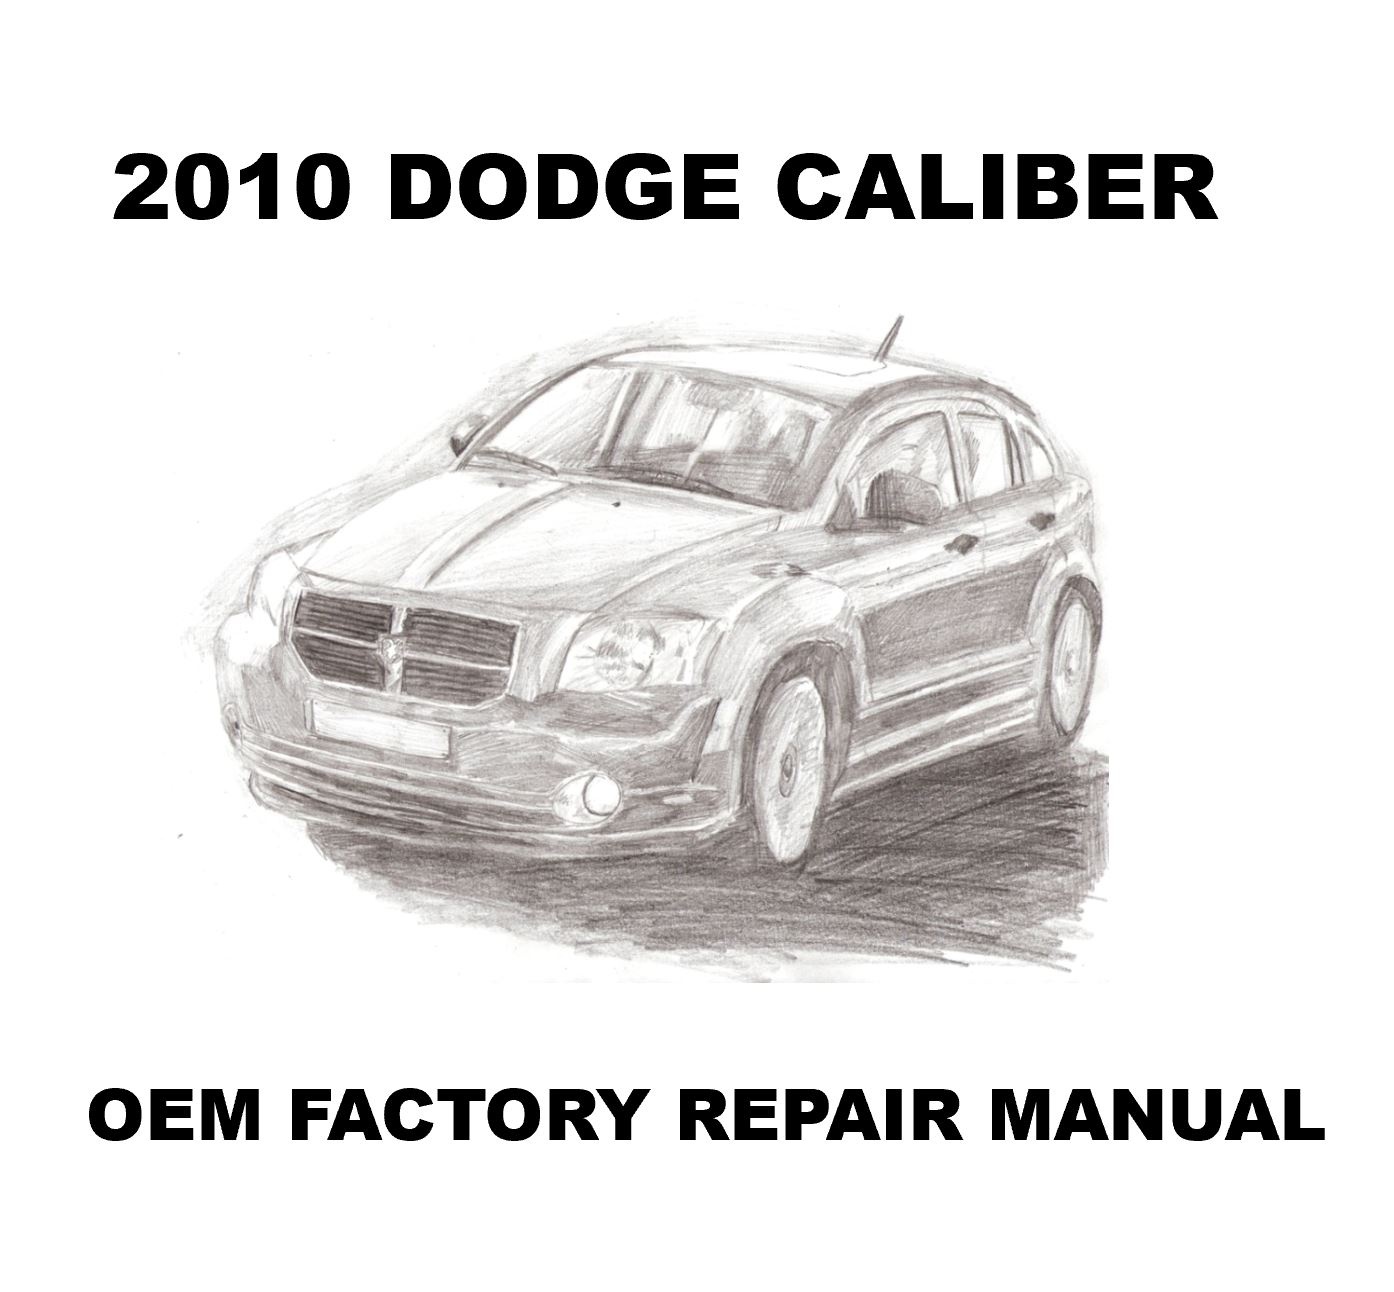 2010_dodge_caliber_repair_manual_1394